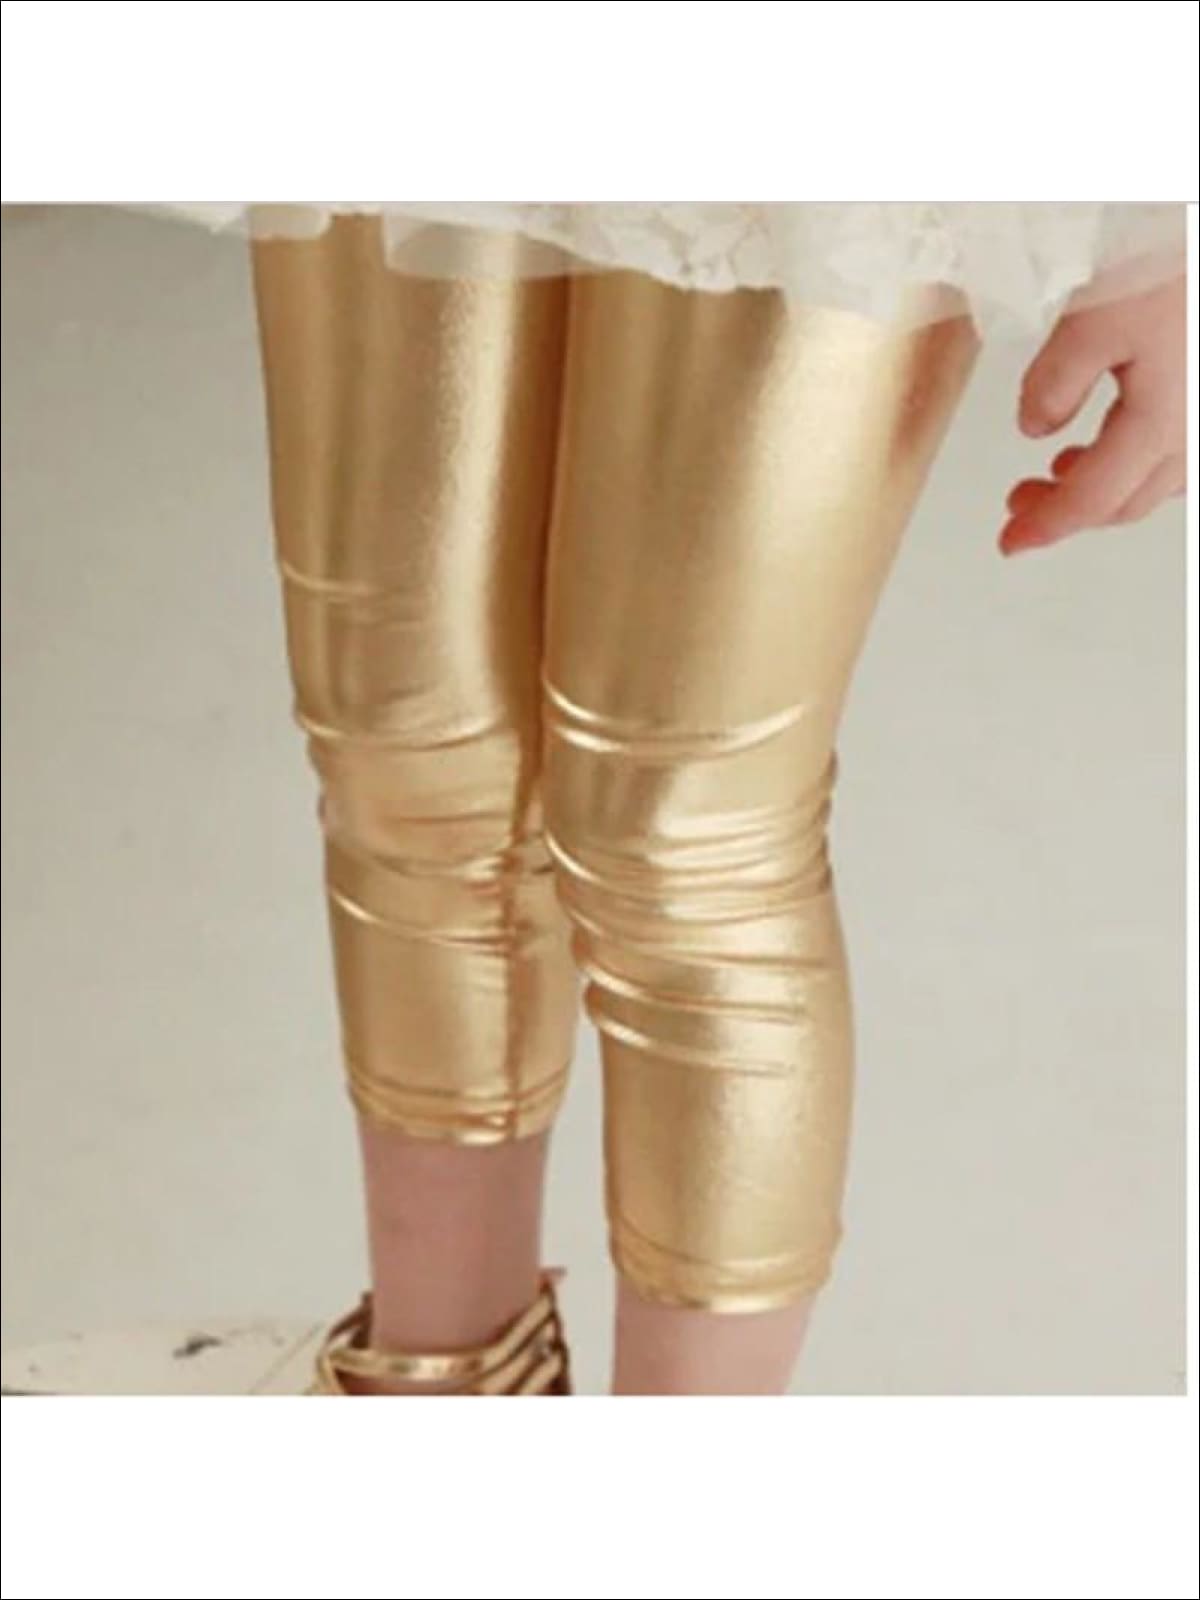 Gold Metallic leggings